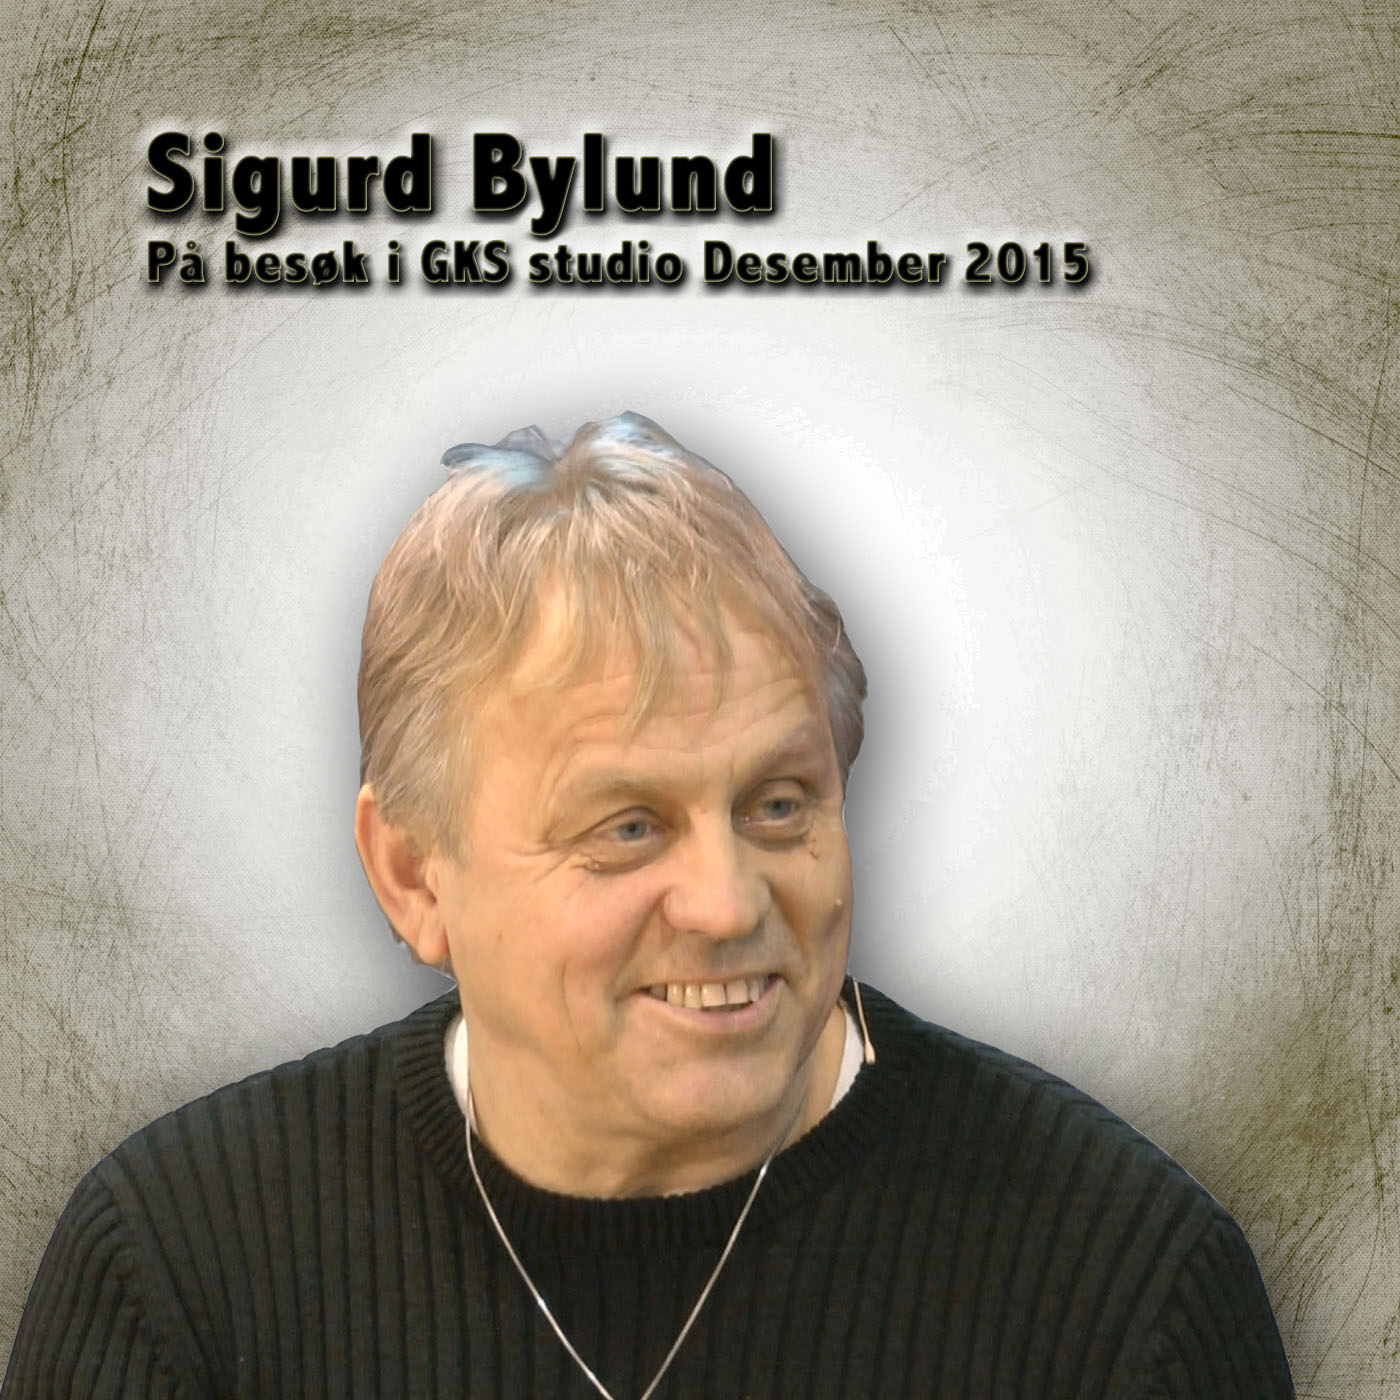 Sigurd Bylund